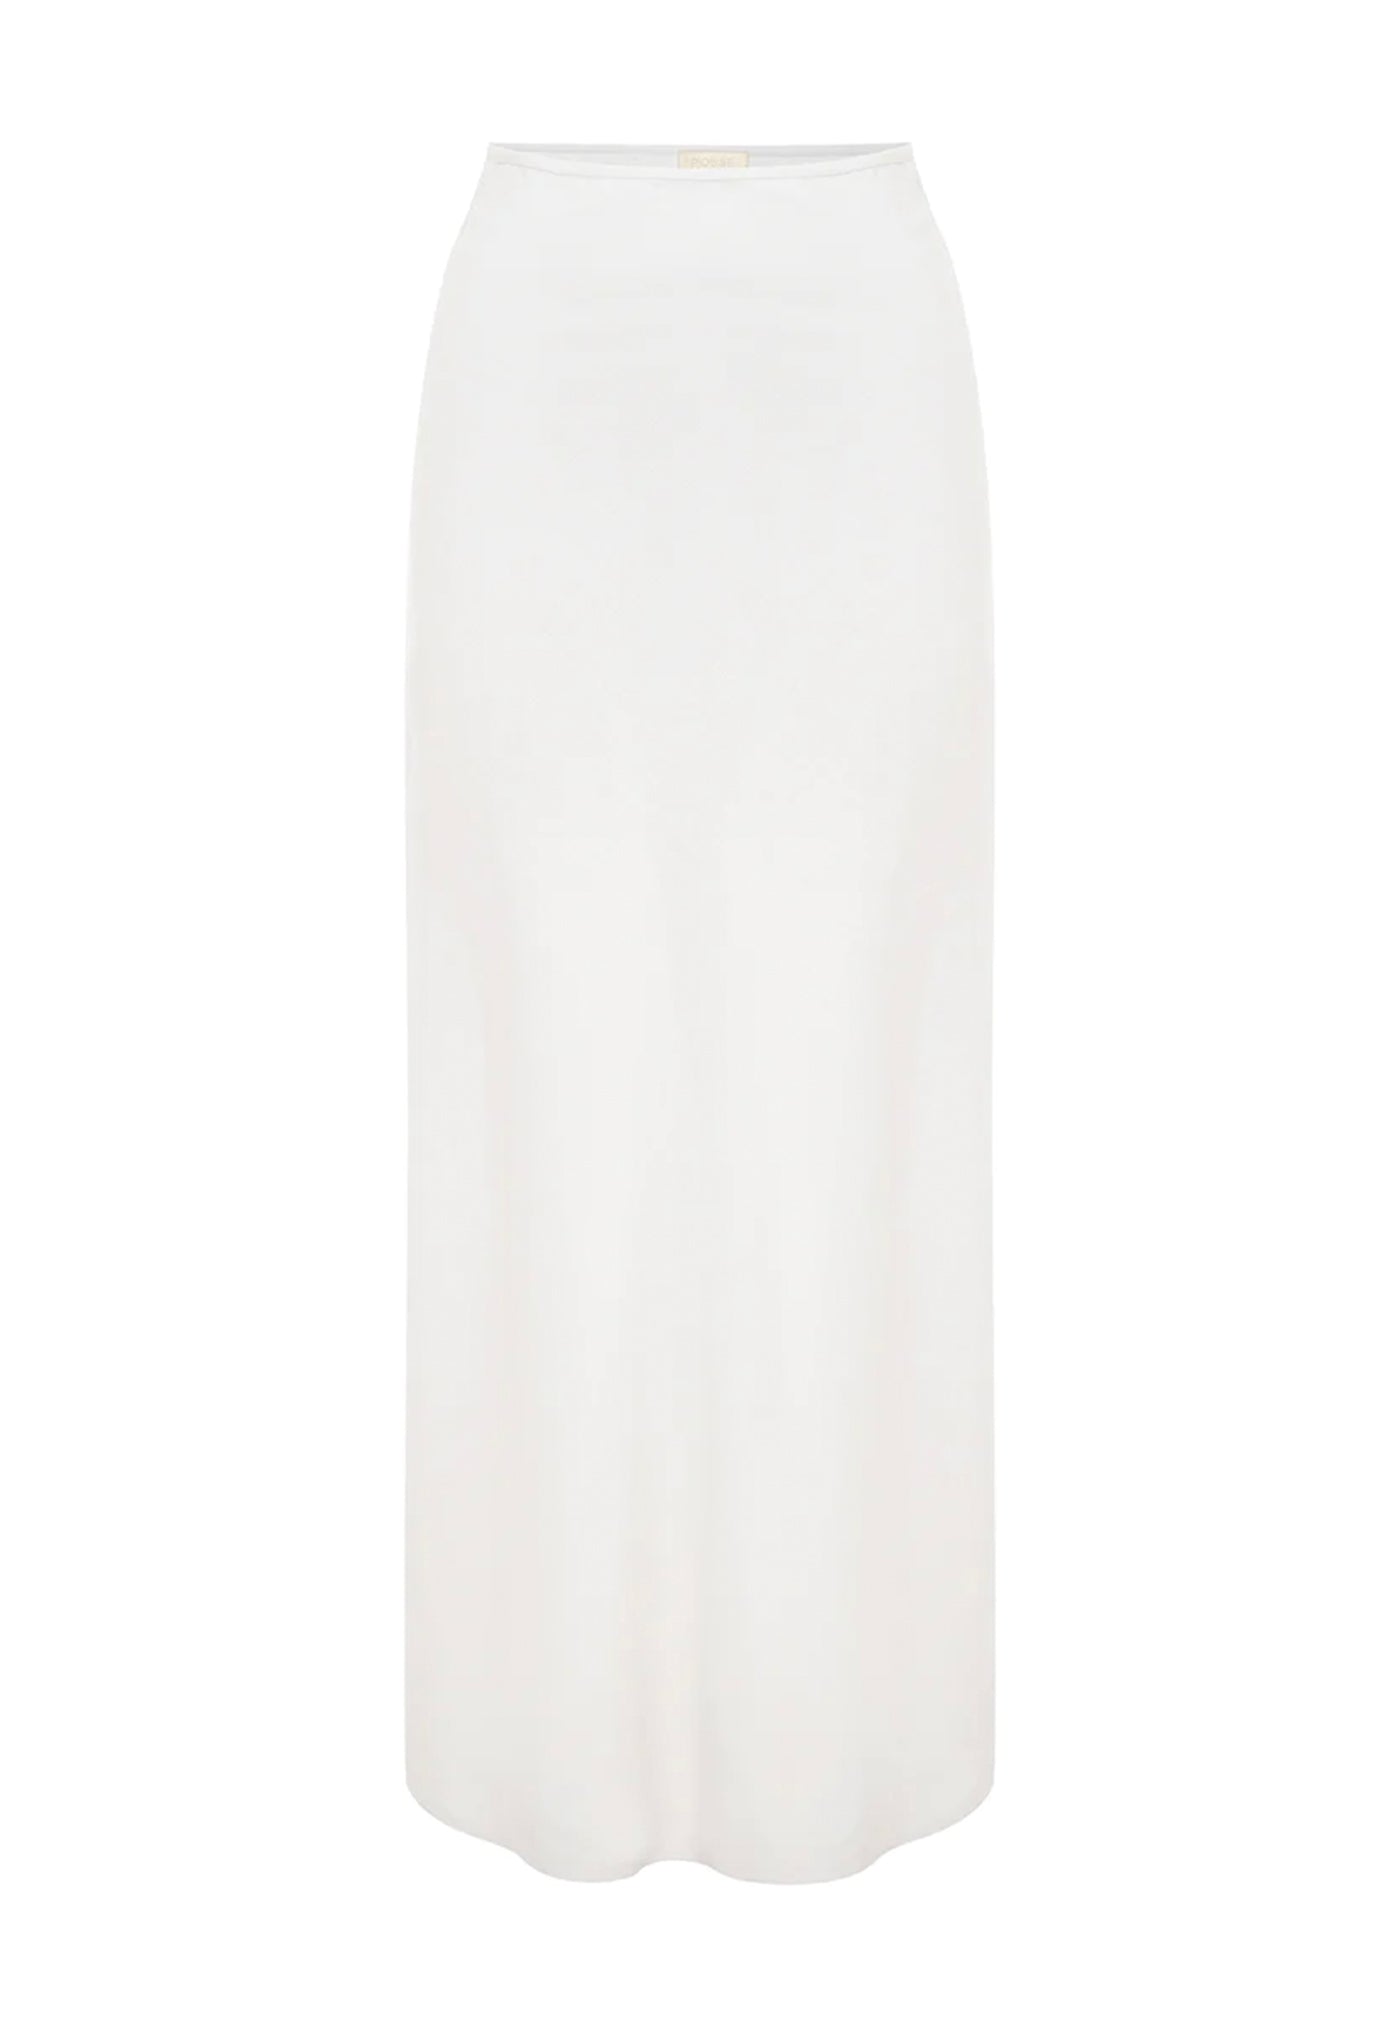 Aurora Skirt - Ivory sold by Angel Divine